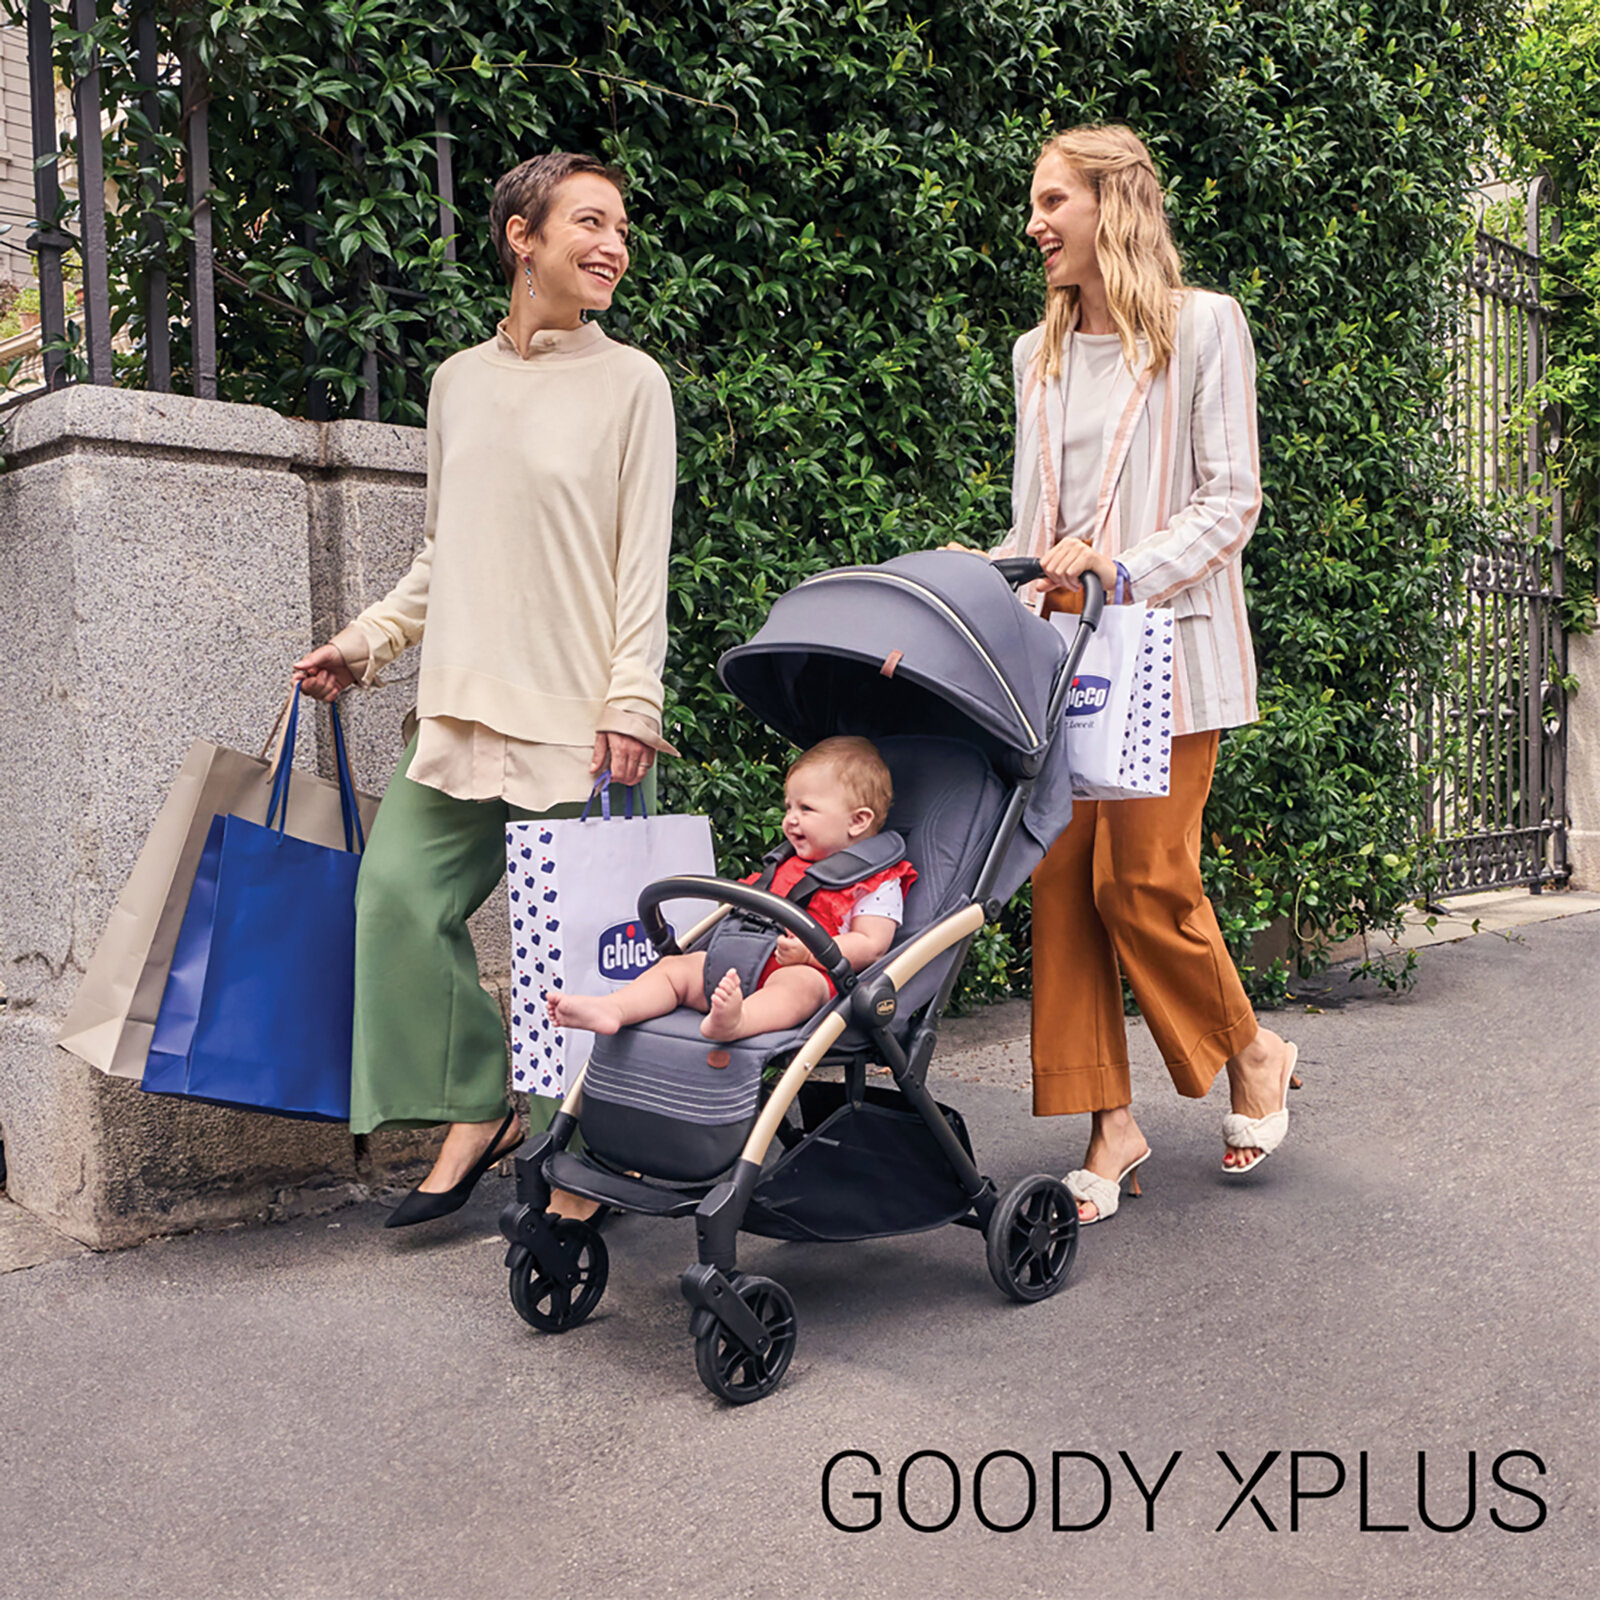 Duo Goody Xplus Travel Sistem Bebek Arabası